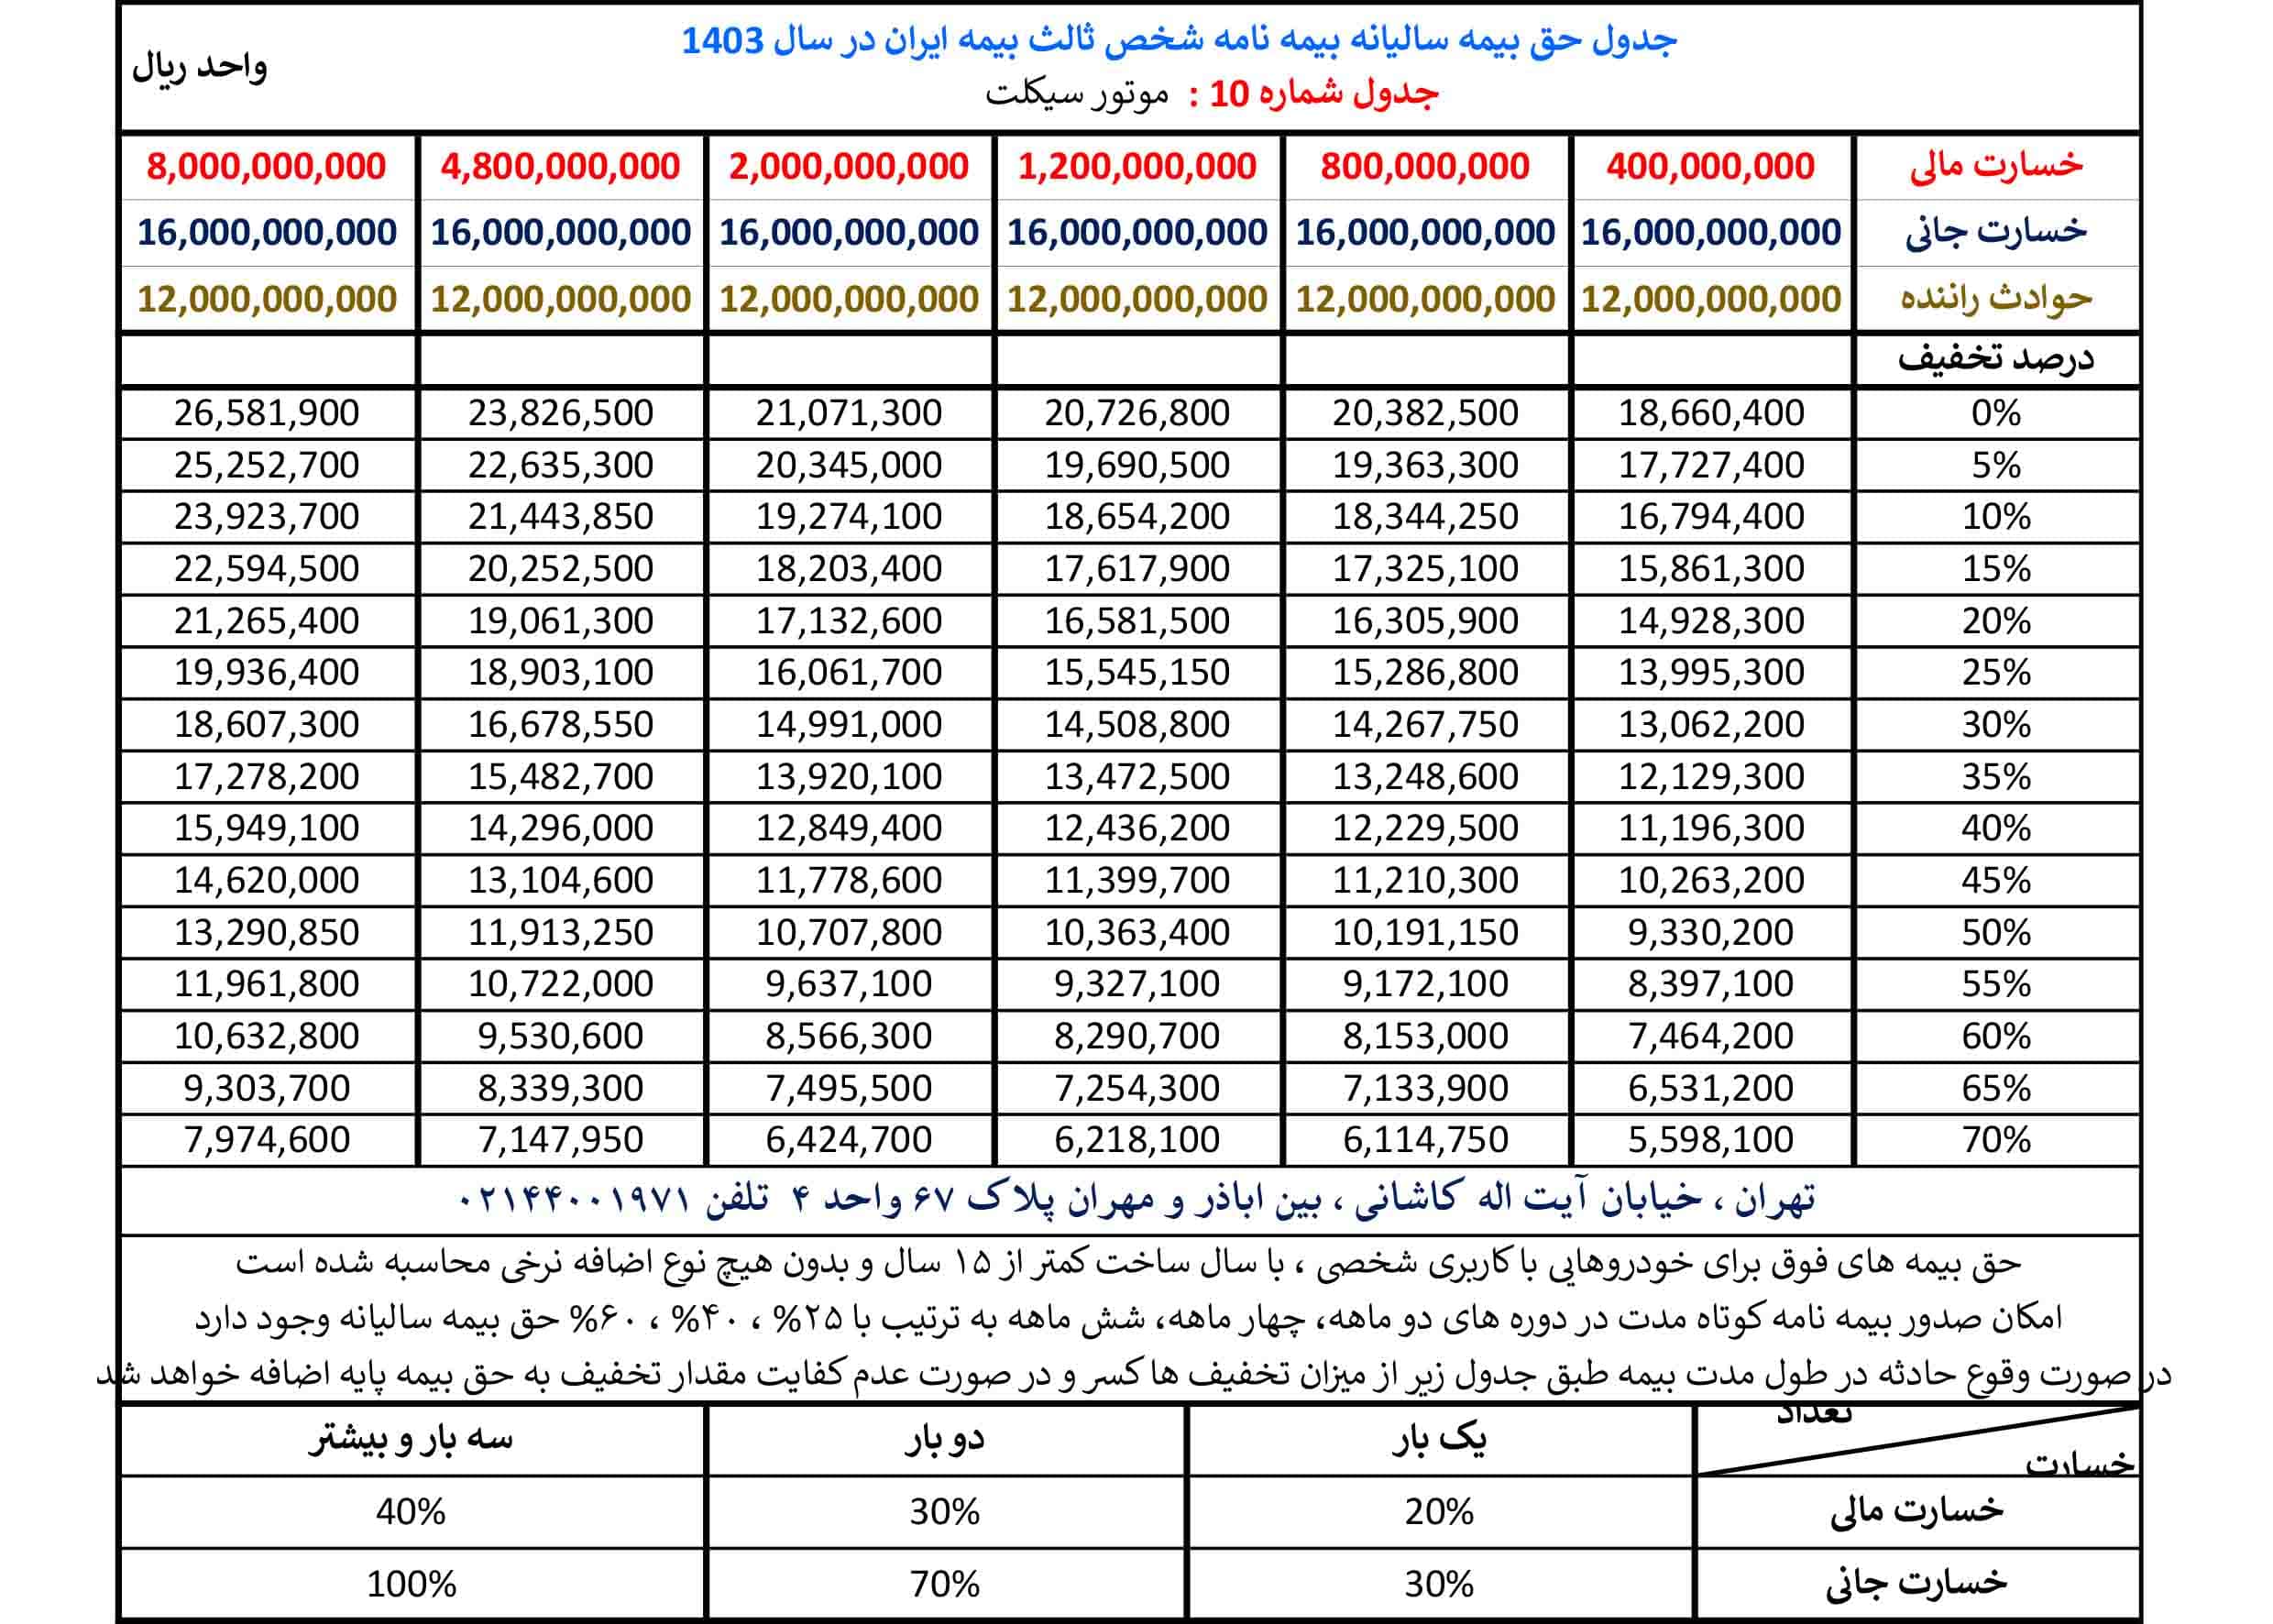 جدول حق بیمه بیمه شخص ثالث بیمه ایران در سال 1403 مربوط به موتورسیکلت